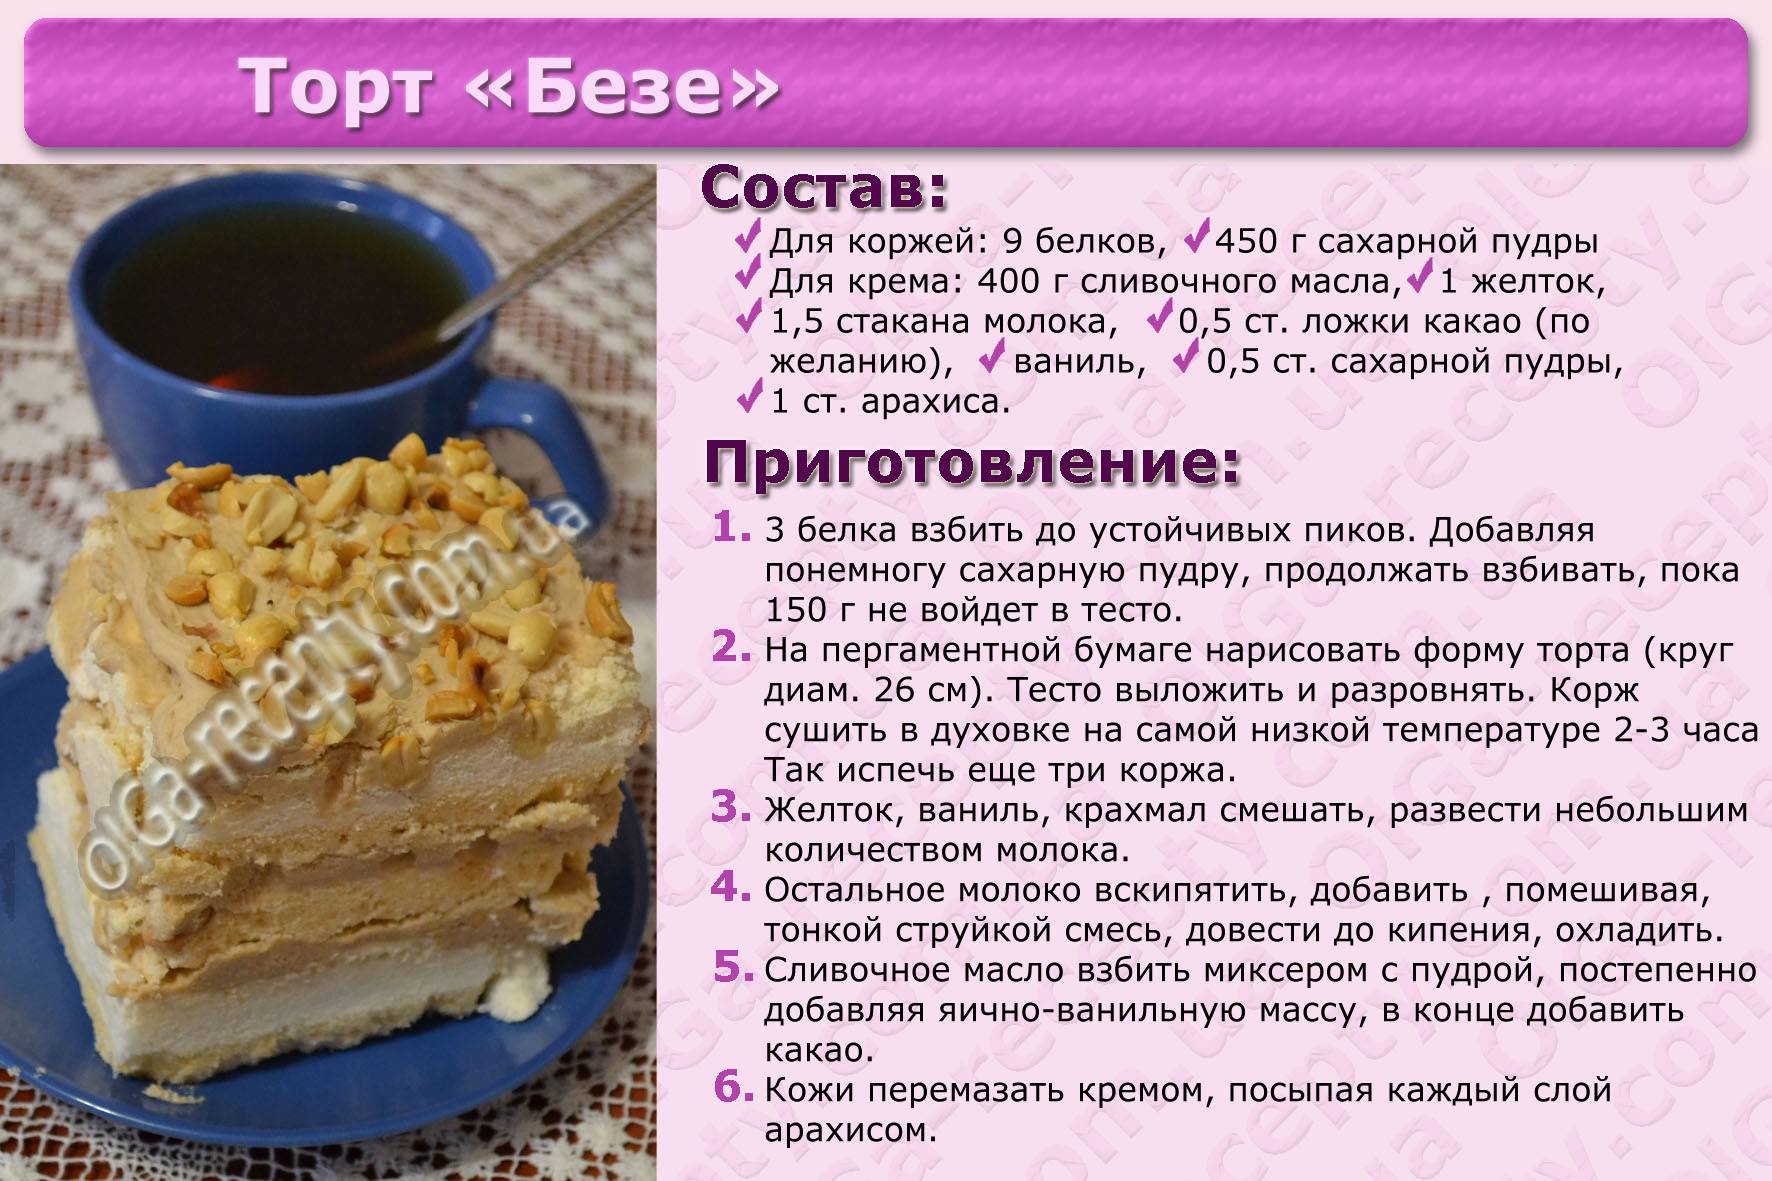 Как испечь торт для собак? рецепт | dogkind.ru